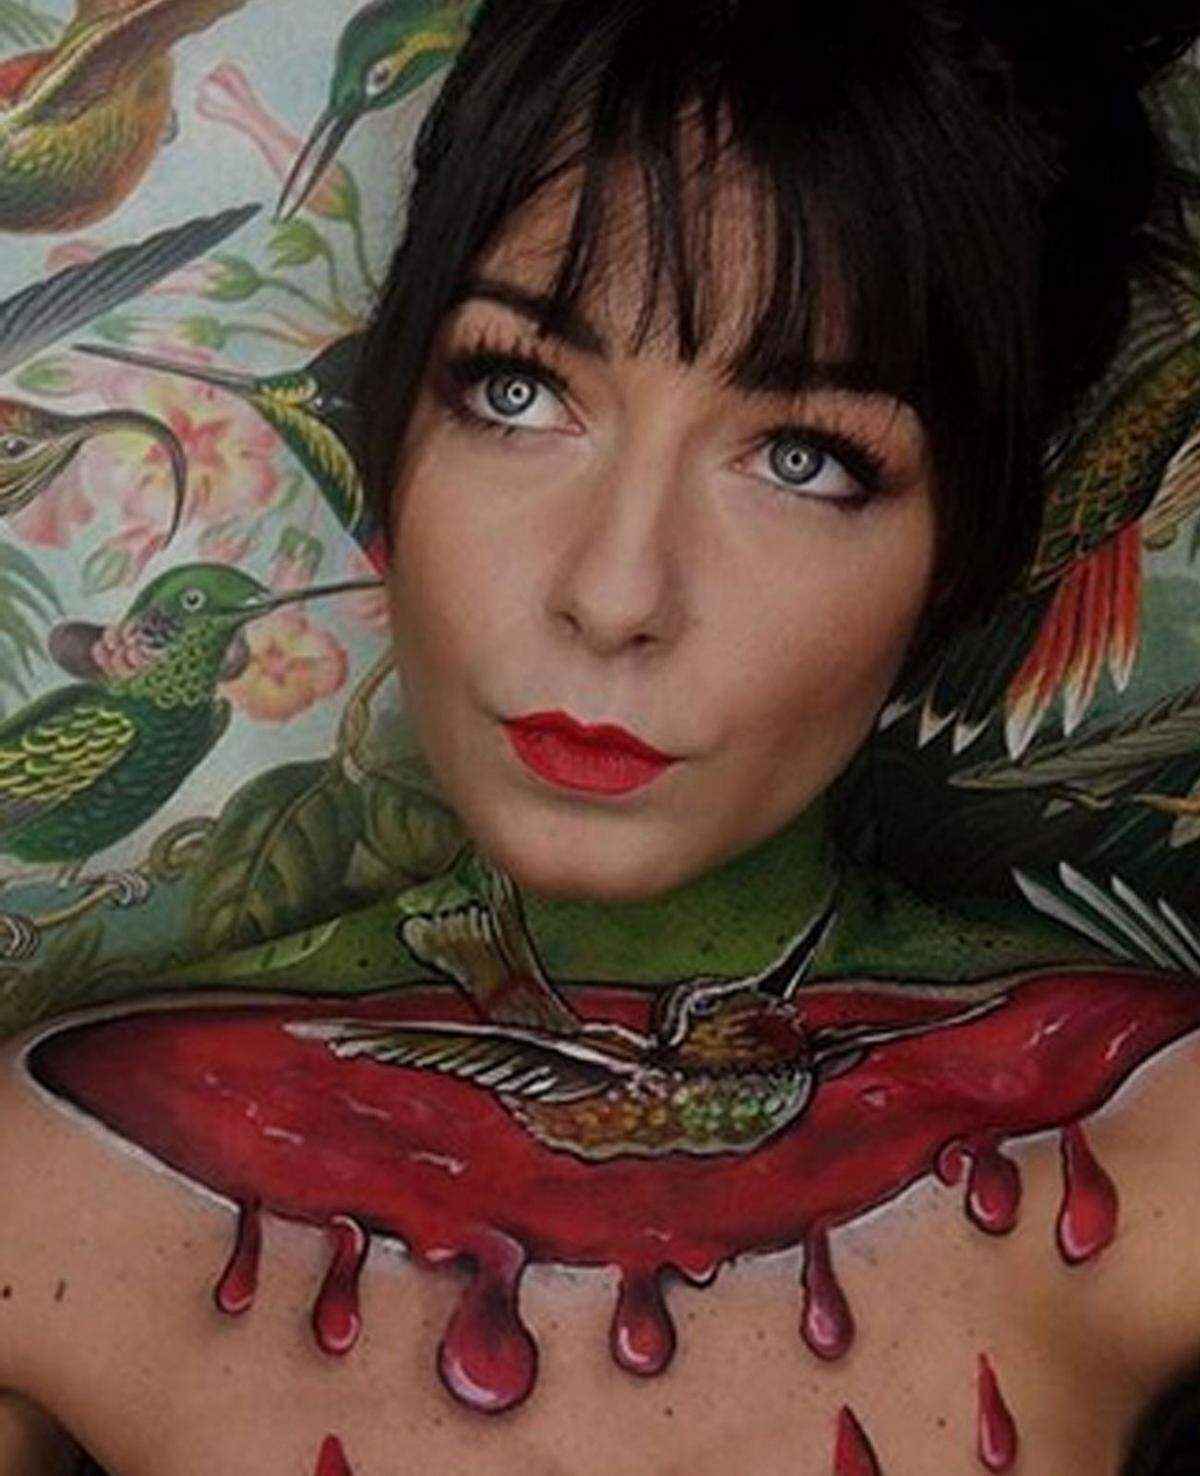 Dieses kunstvolle Blutbad hat die deutsche Make-up-Künstlerin Kati Powderbrush angerichtet.  